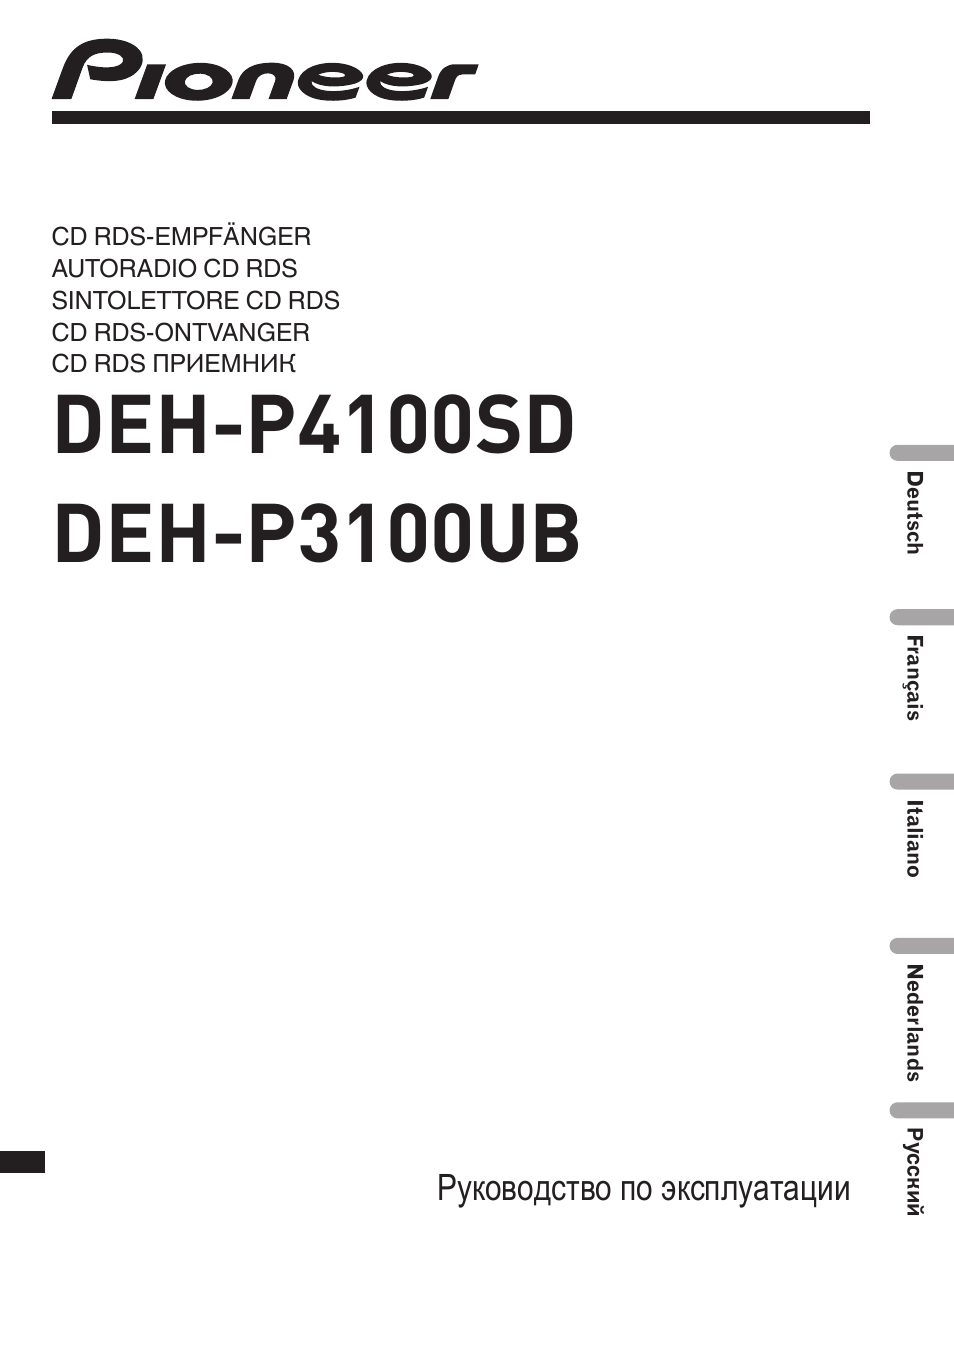 Инструкция по эксплуатации Pioneer DEH-P4100SD | 341 cтраница